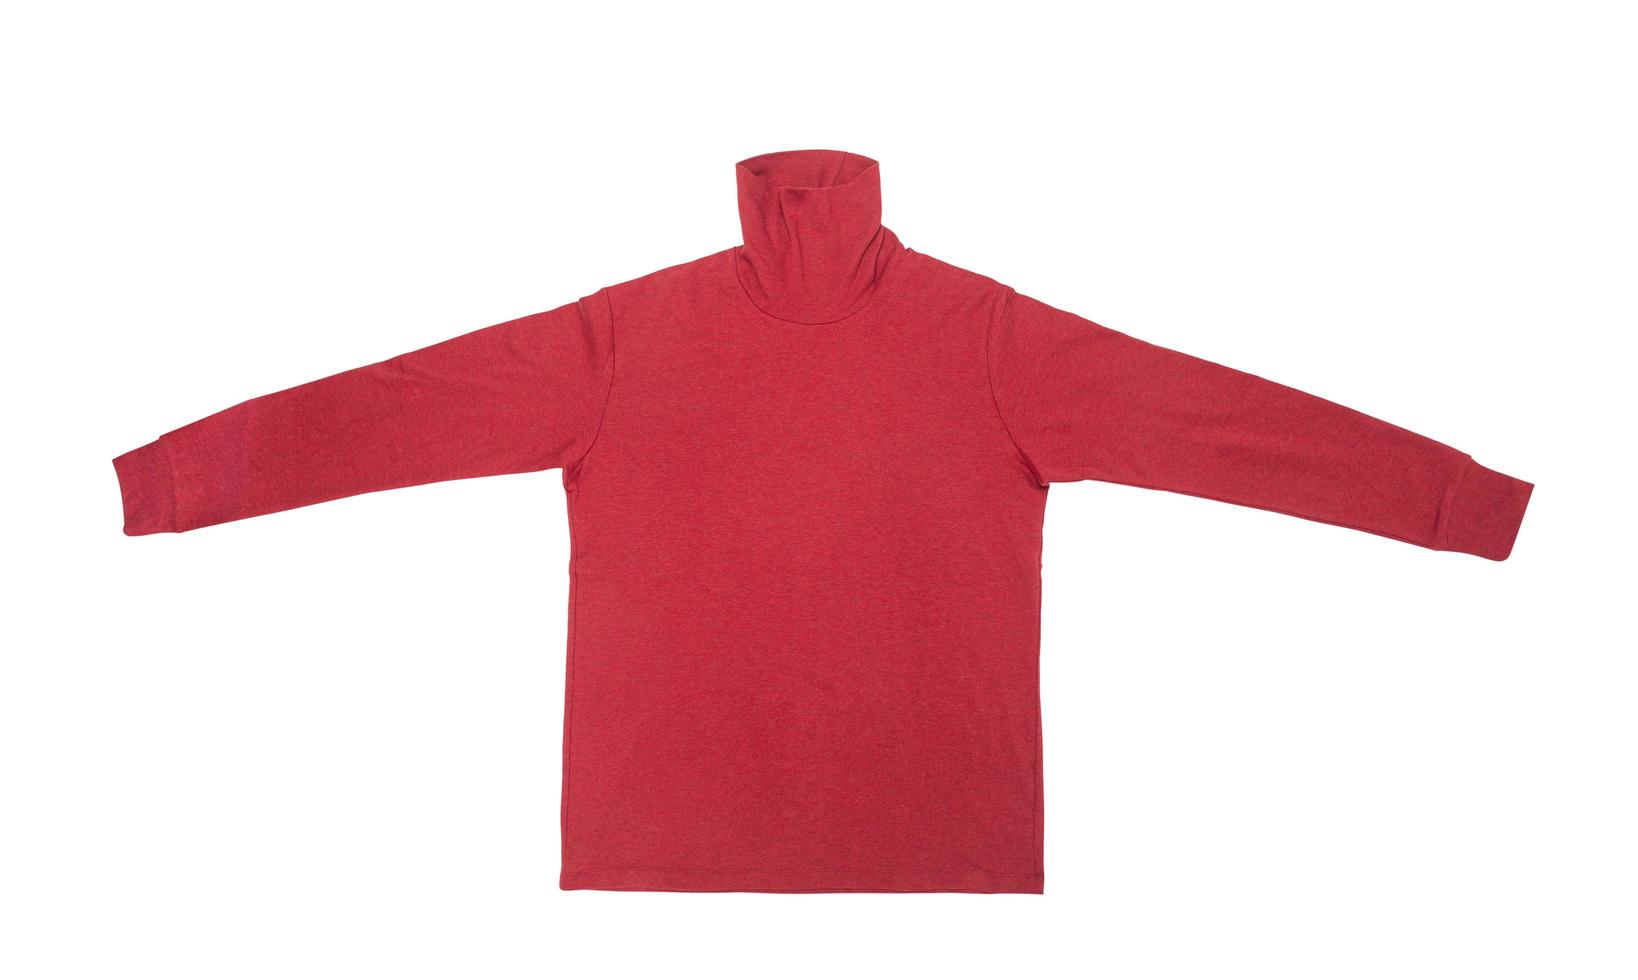 maglietta rossa a manica lunga isolata su sfondo bianco con tracciato di ritaglio foto